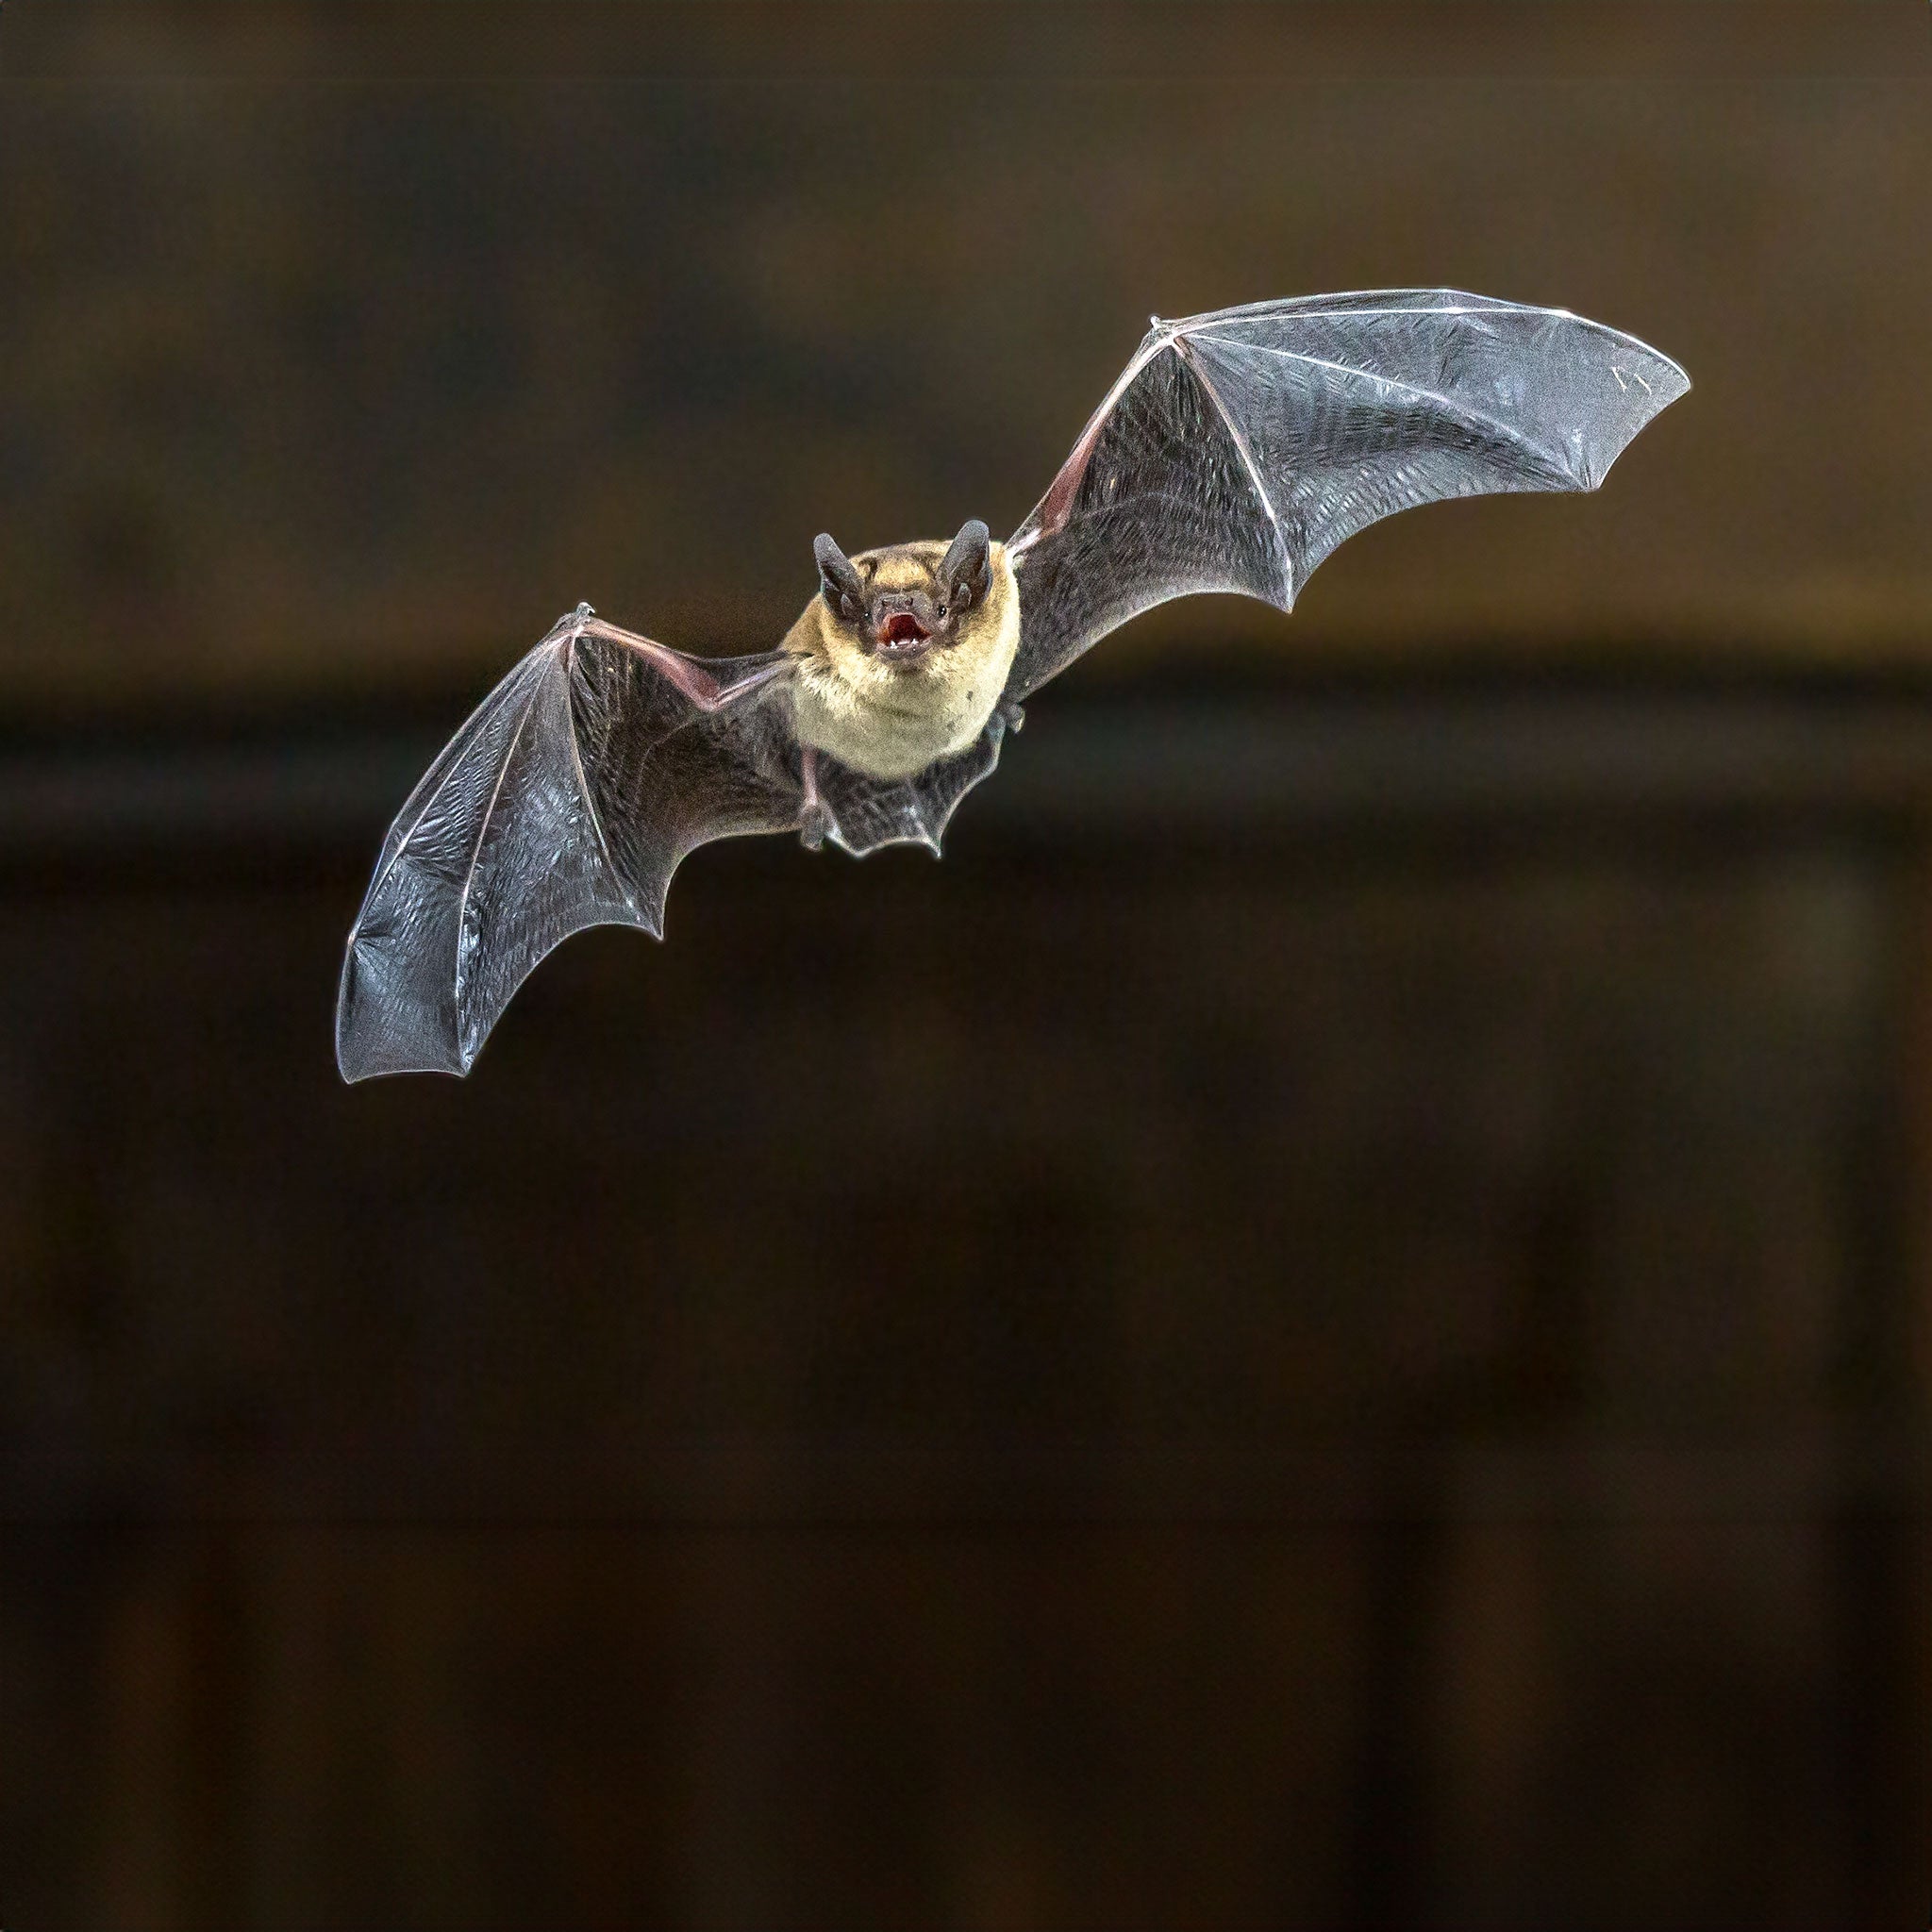 Bat in mid-flight